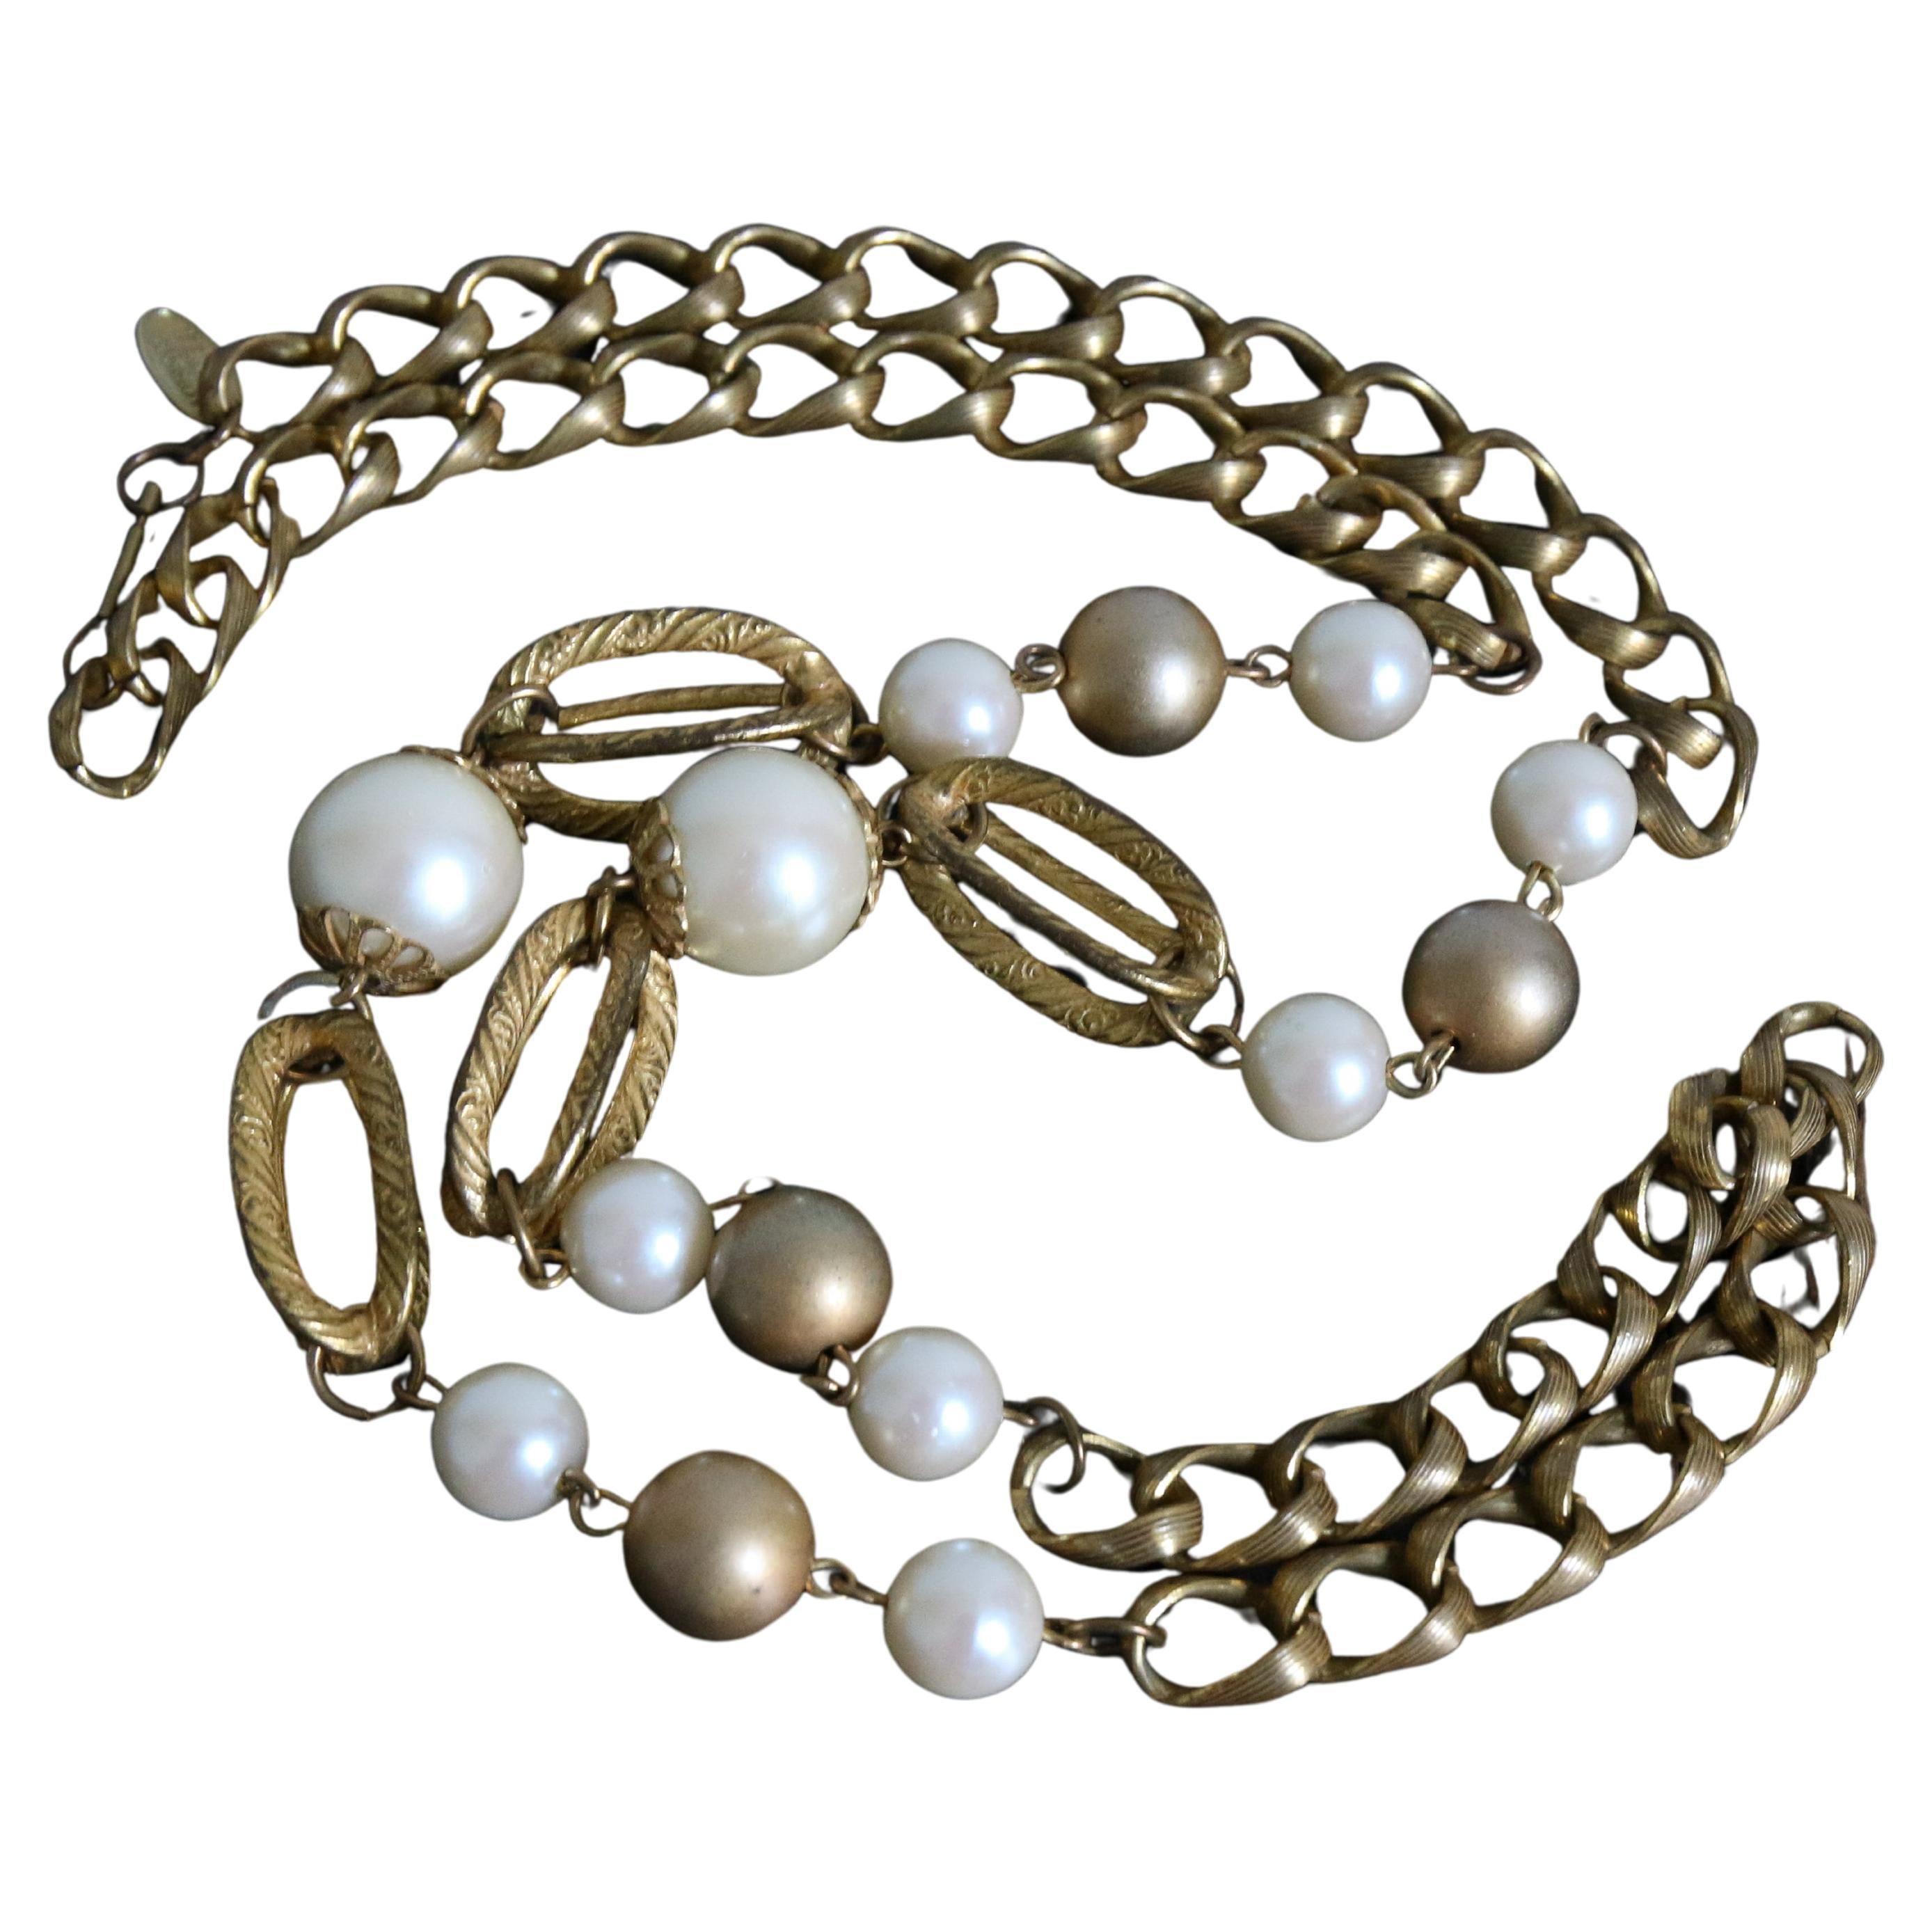 Cet époustouflant et rare collier Miriam Haskell des années 1960, composé d'un seul brin de chaîne en métal doré, avec des perles blanches et dorées nacrées, encadrant des perles tubulaires décoratives en forme de cage, et terminé par des boîtiers